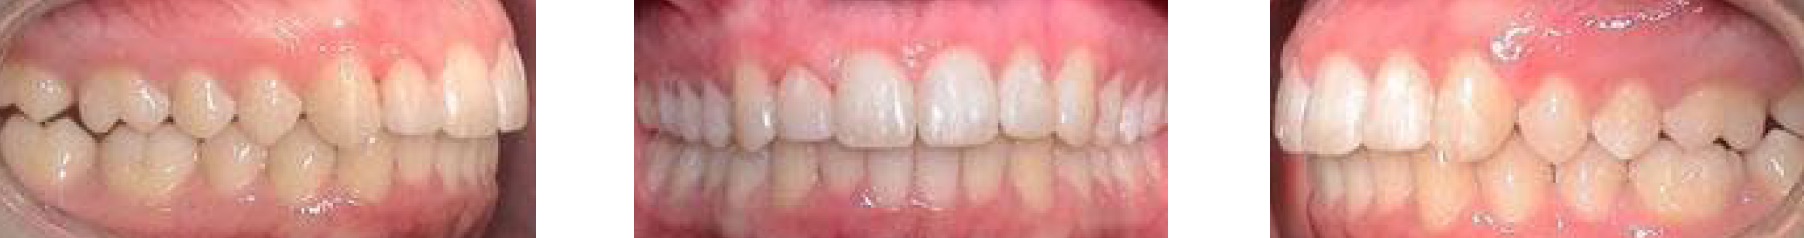 Zähne in Okklusion, frontale sowie seitliche Aufnahmen